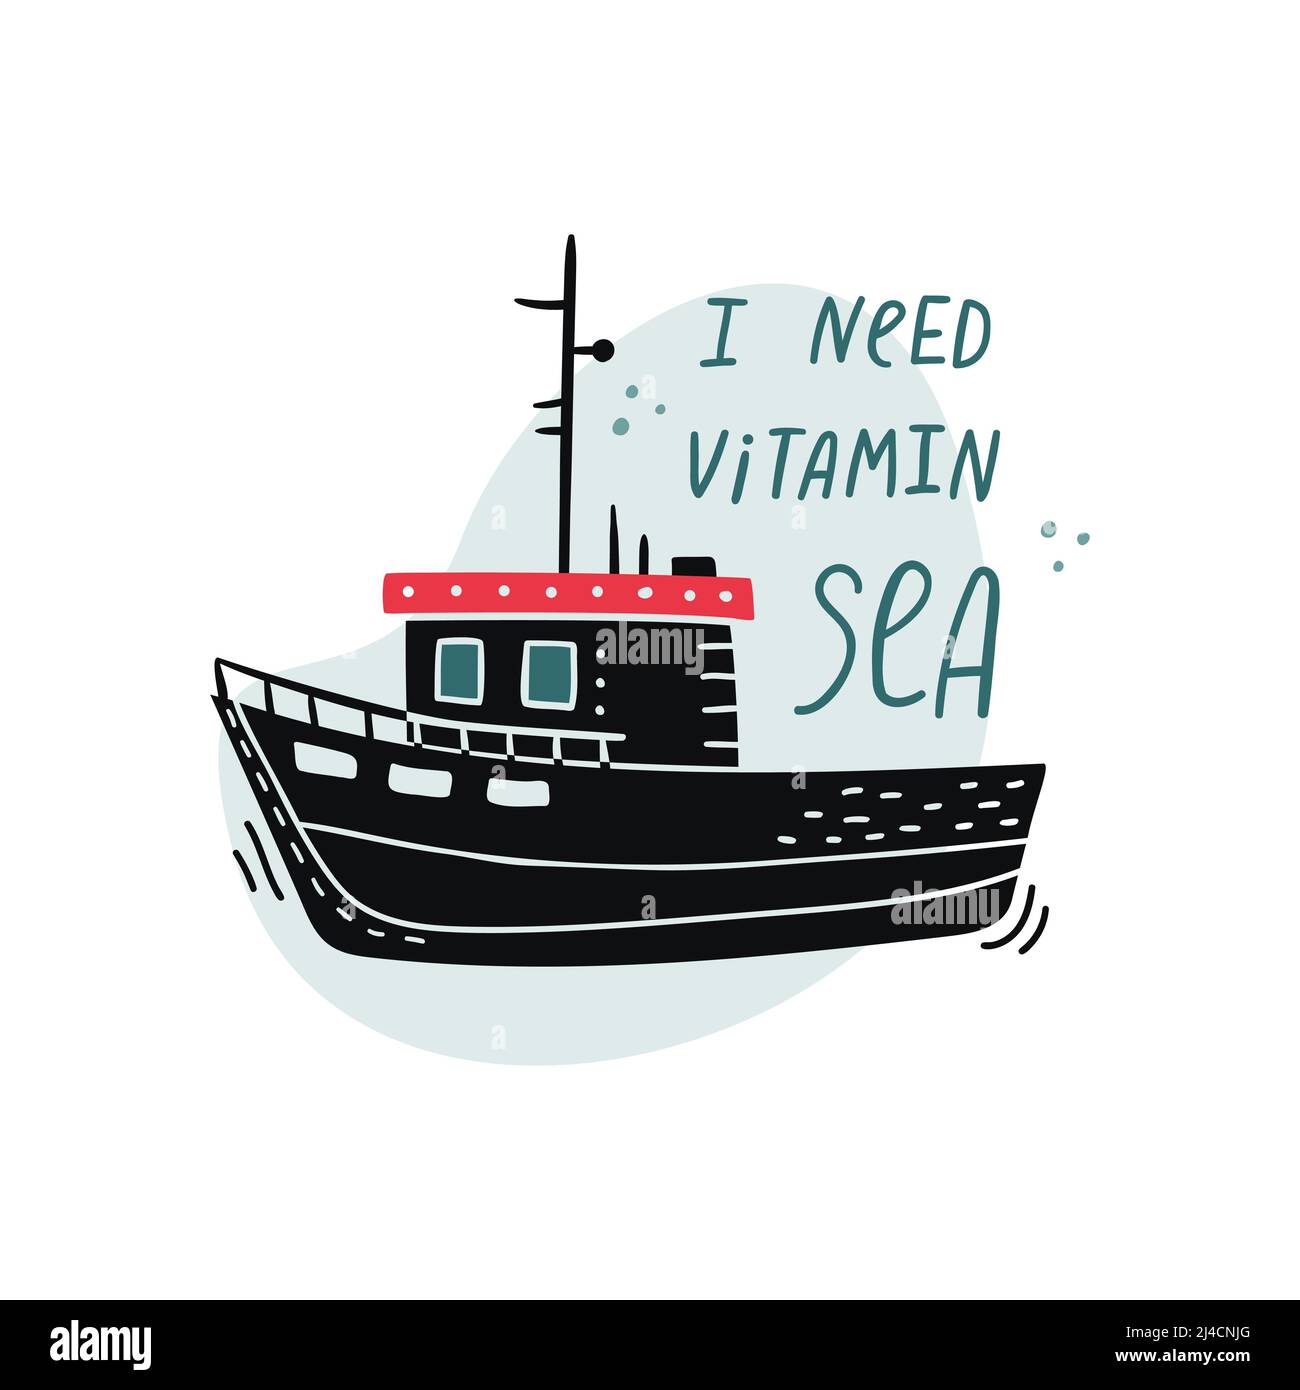 Illustration vectorielle d'un bateau avec lettrage dessiné à la main - J'ai besoin de vitamine mer Illustration de Vecteur